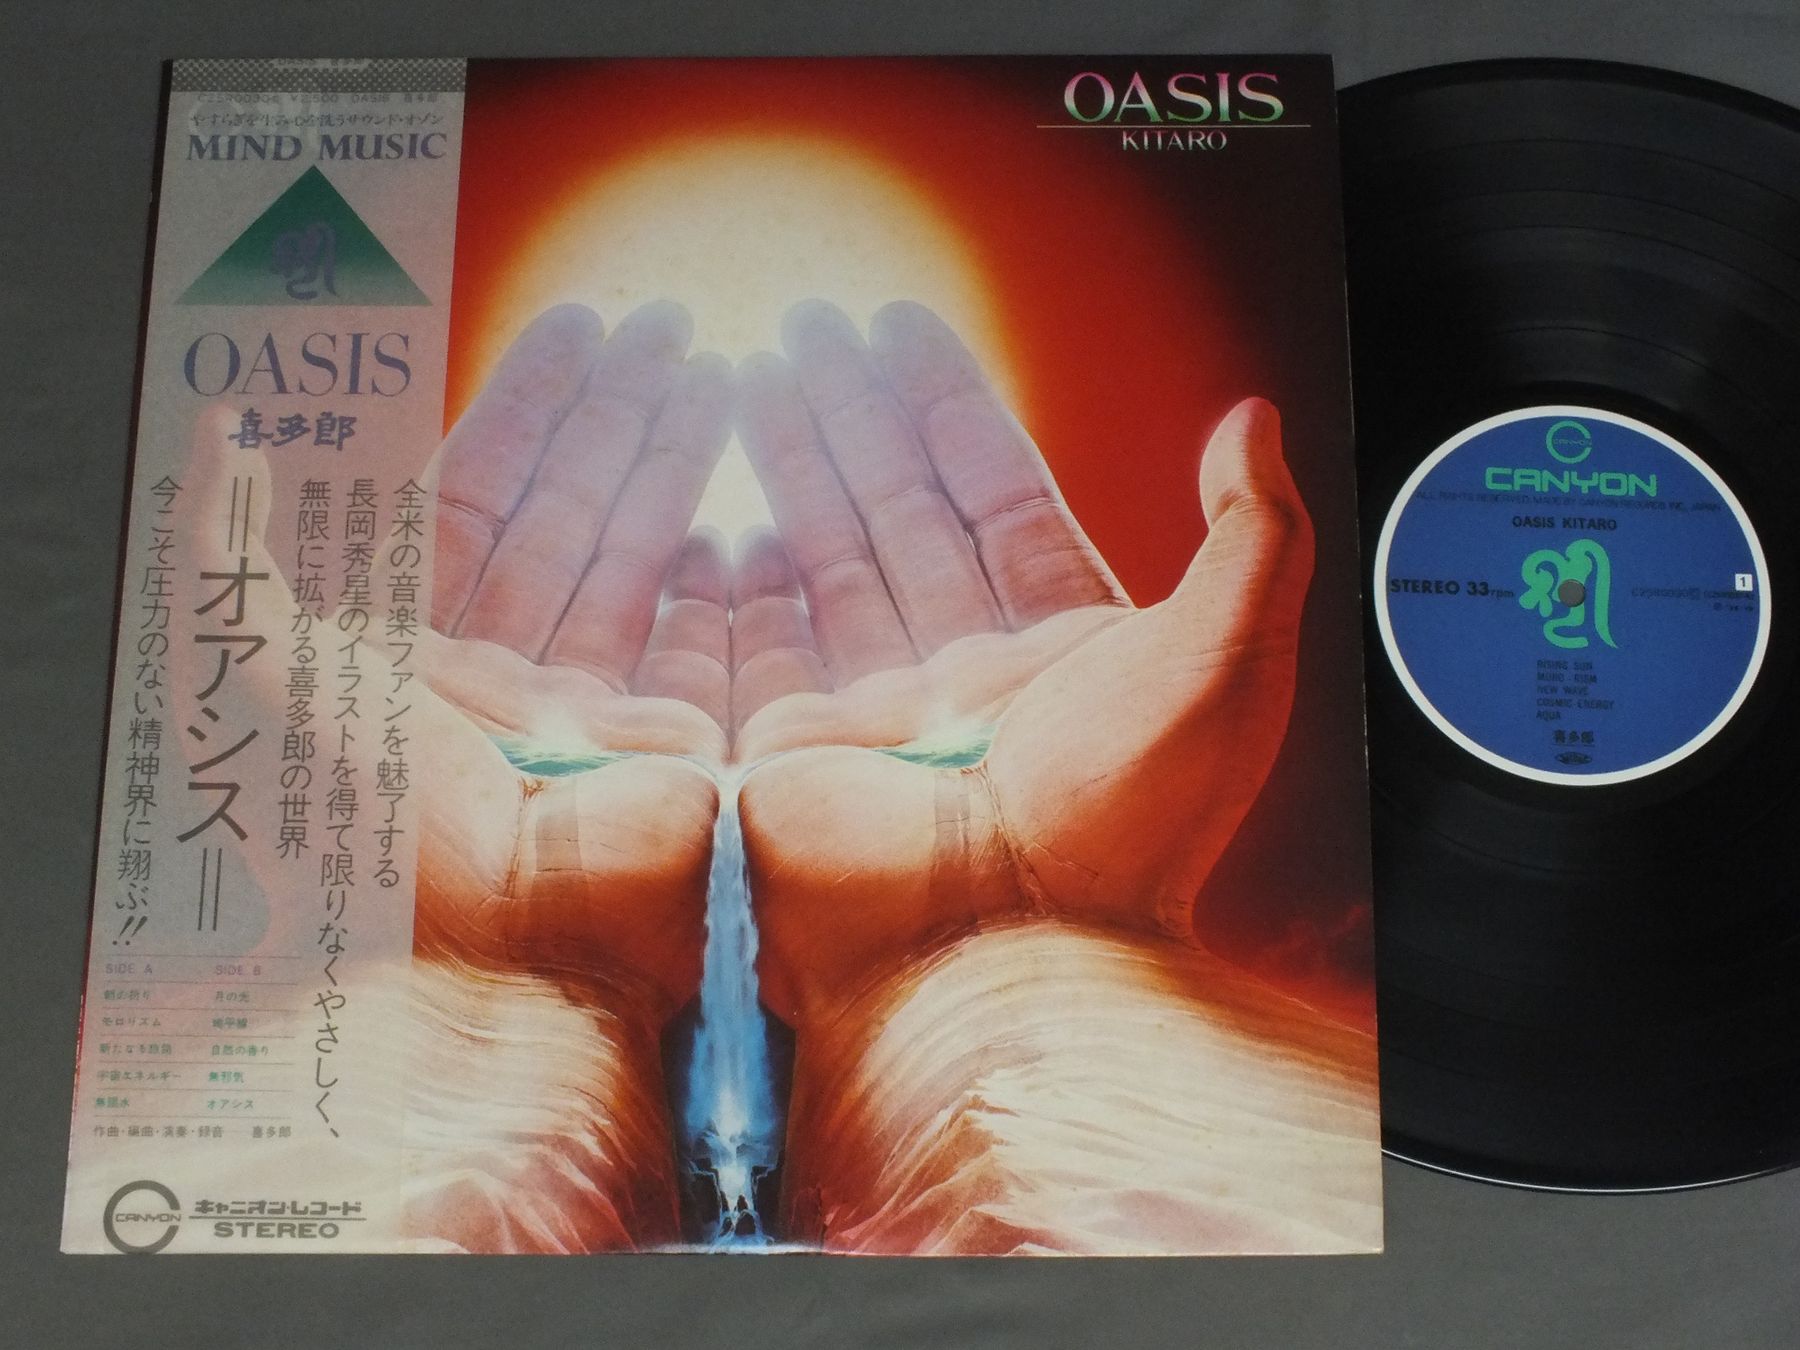 Kitaro喜多郎 Oasisオアシス C25r0030アナログレコード 詳細ページ